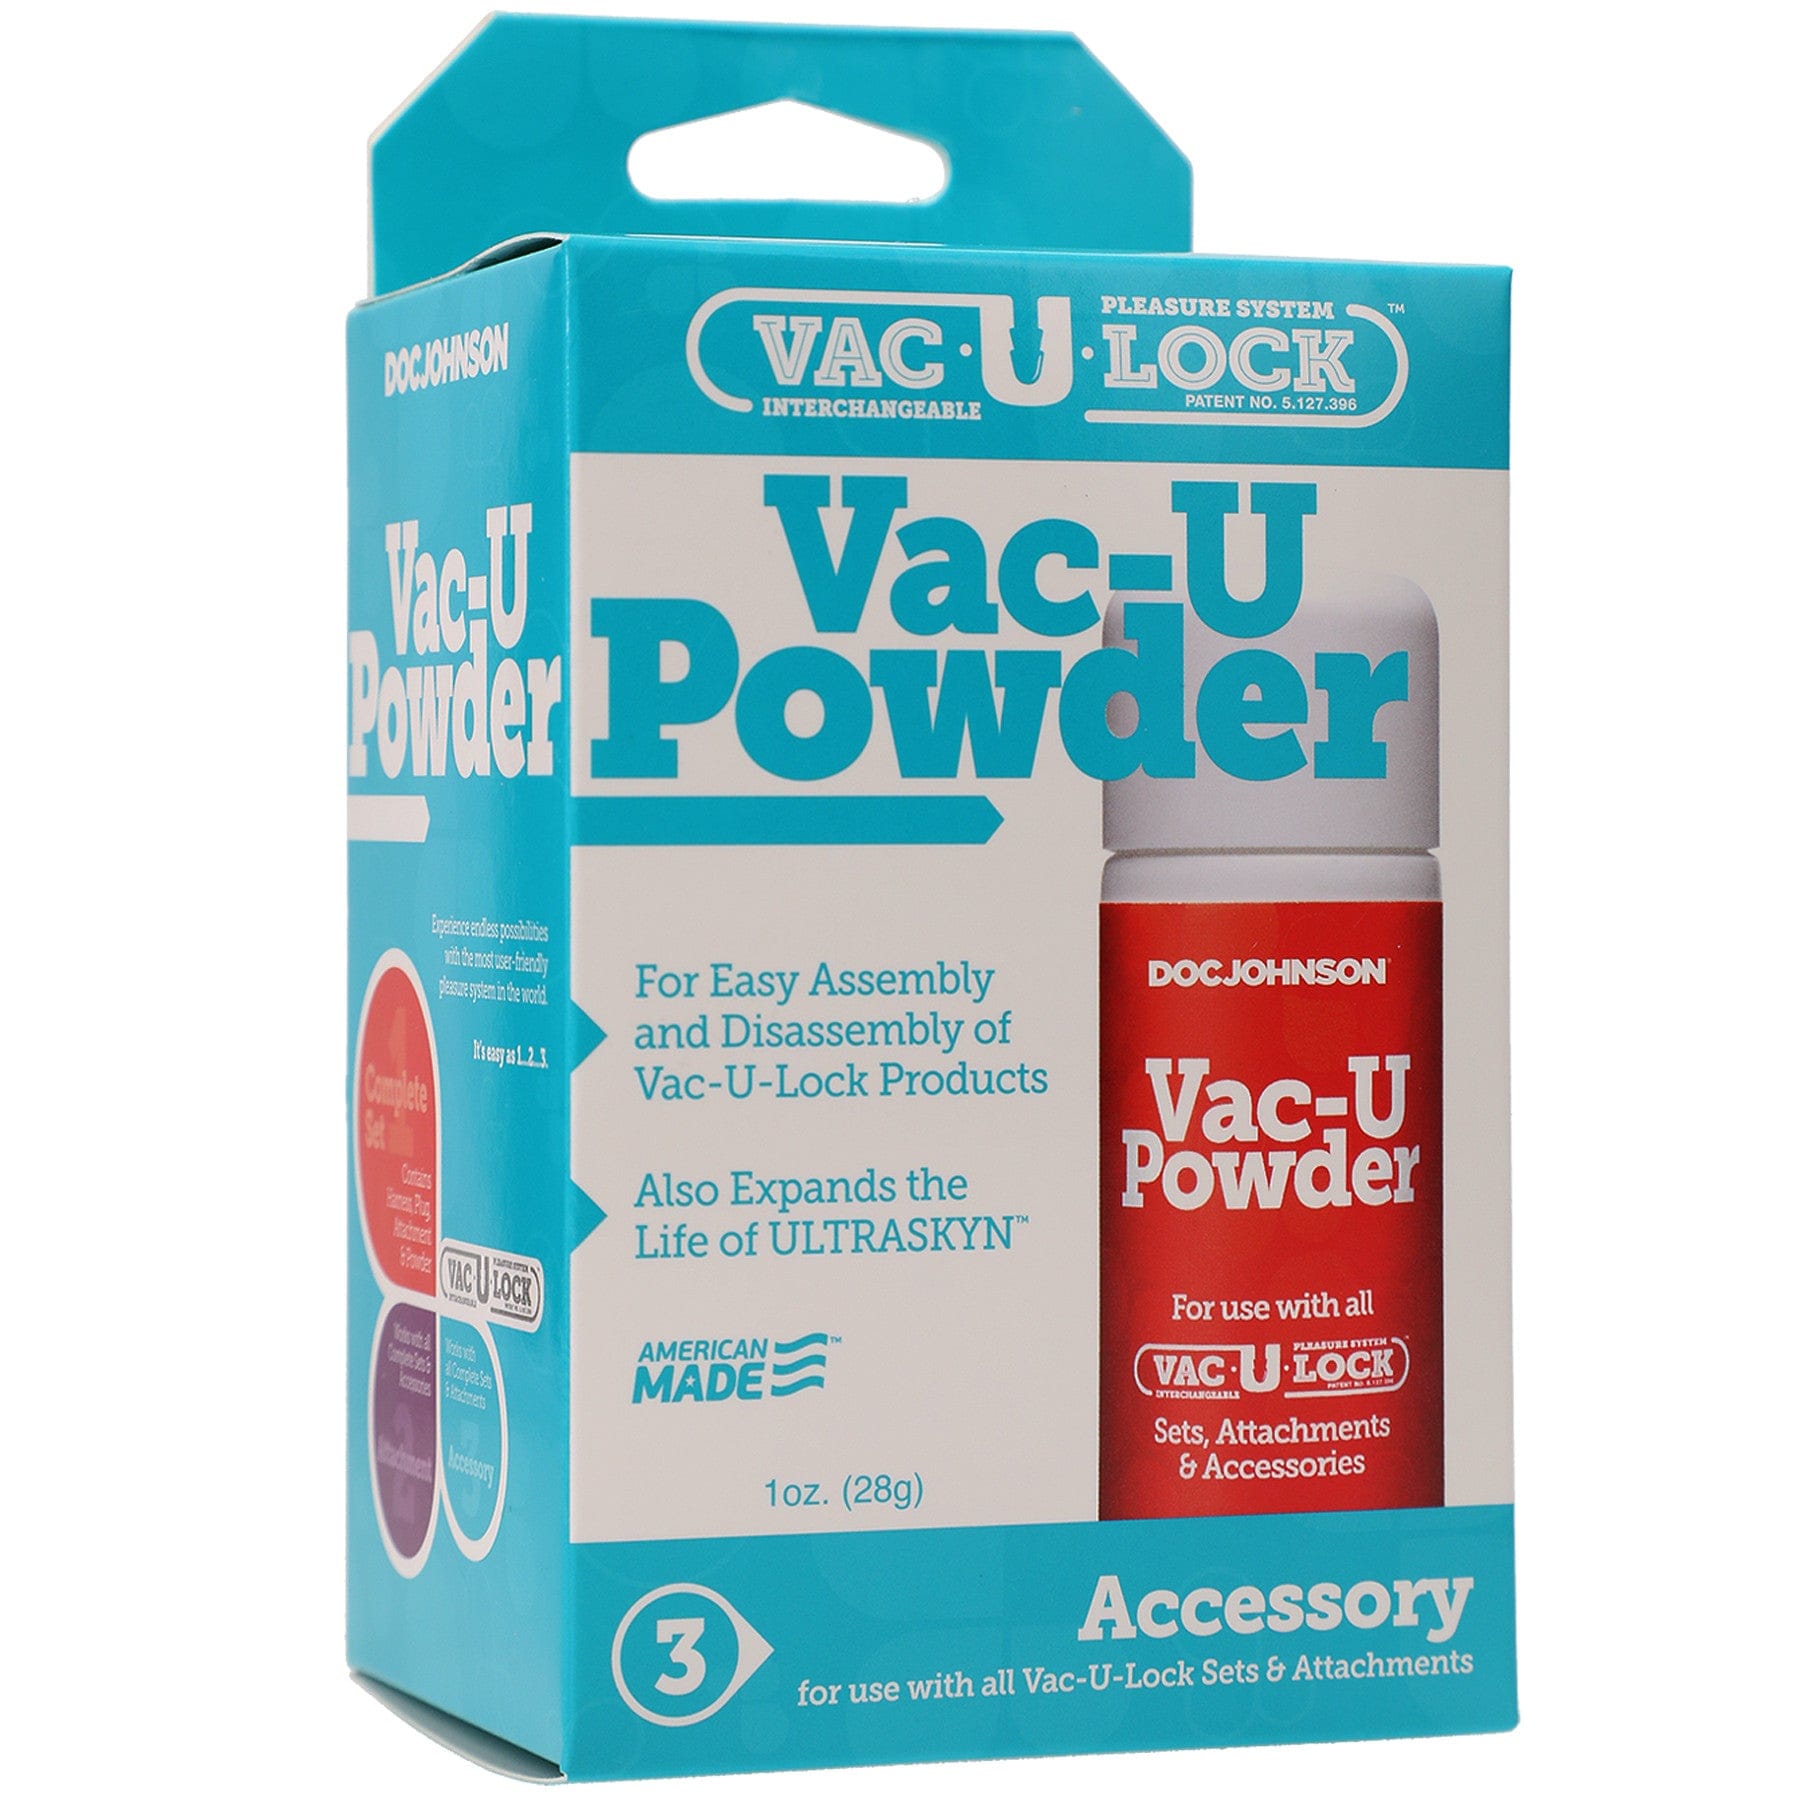 VAC-U POWDER